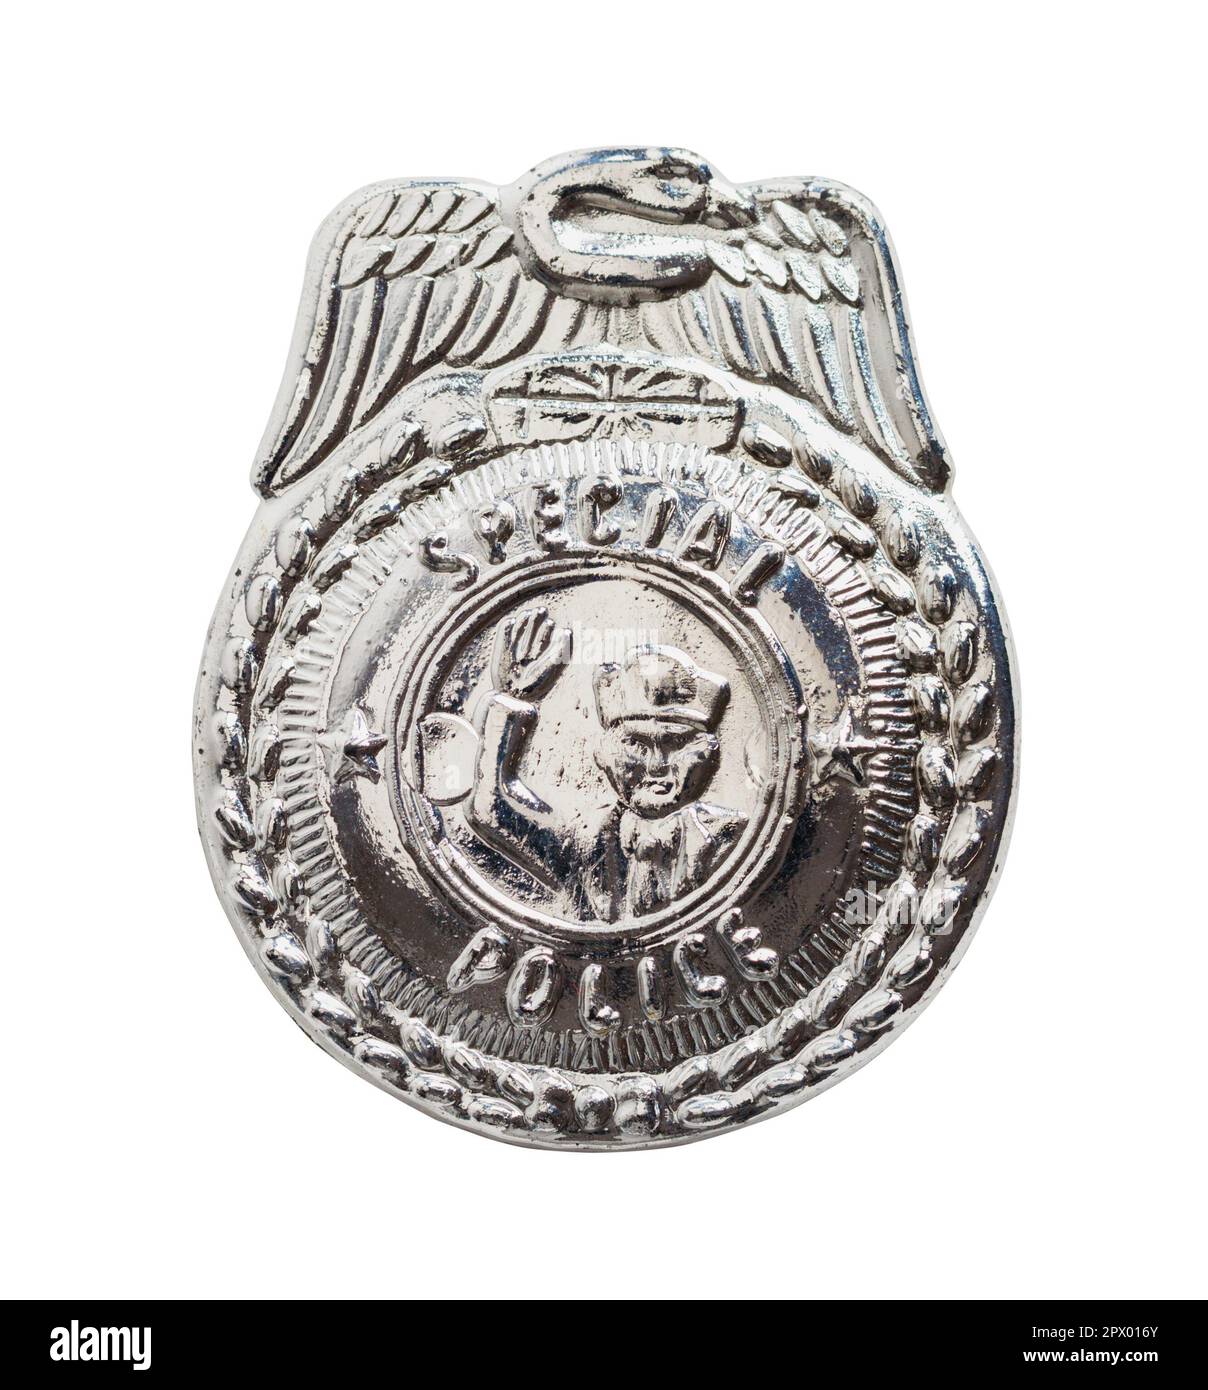 Badge de police en plastique découpé sur blanc. Banque D'Images